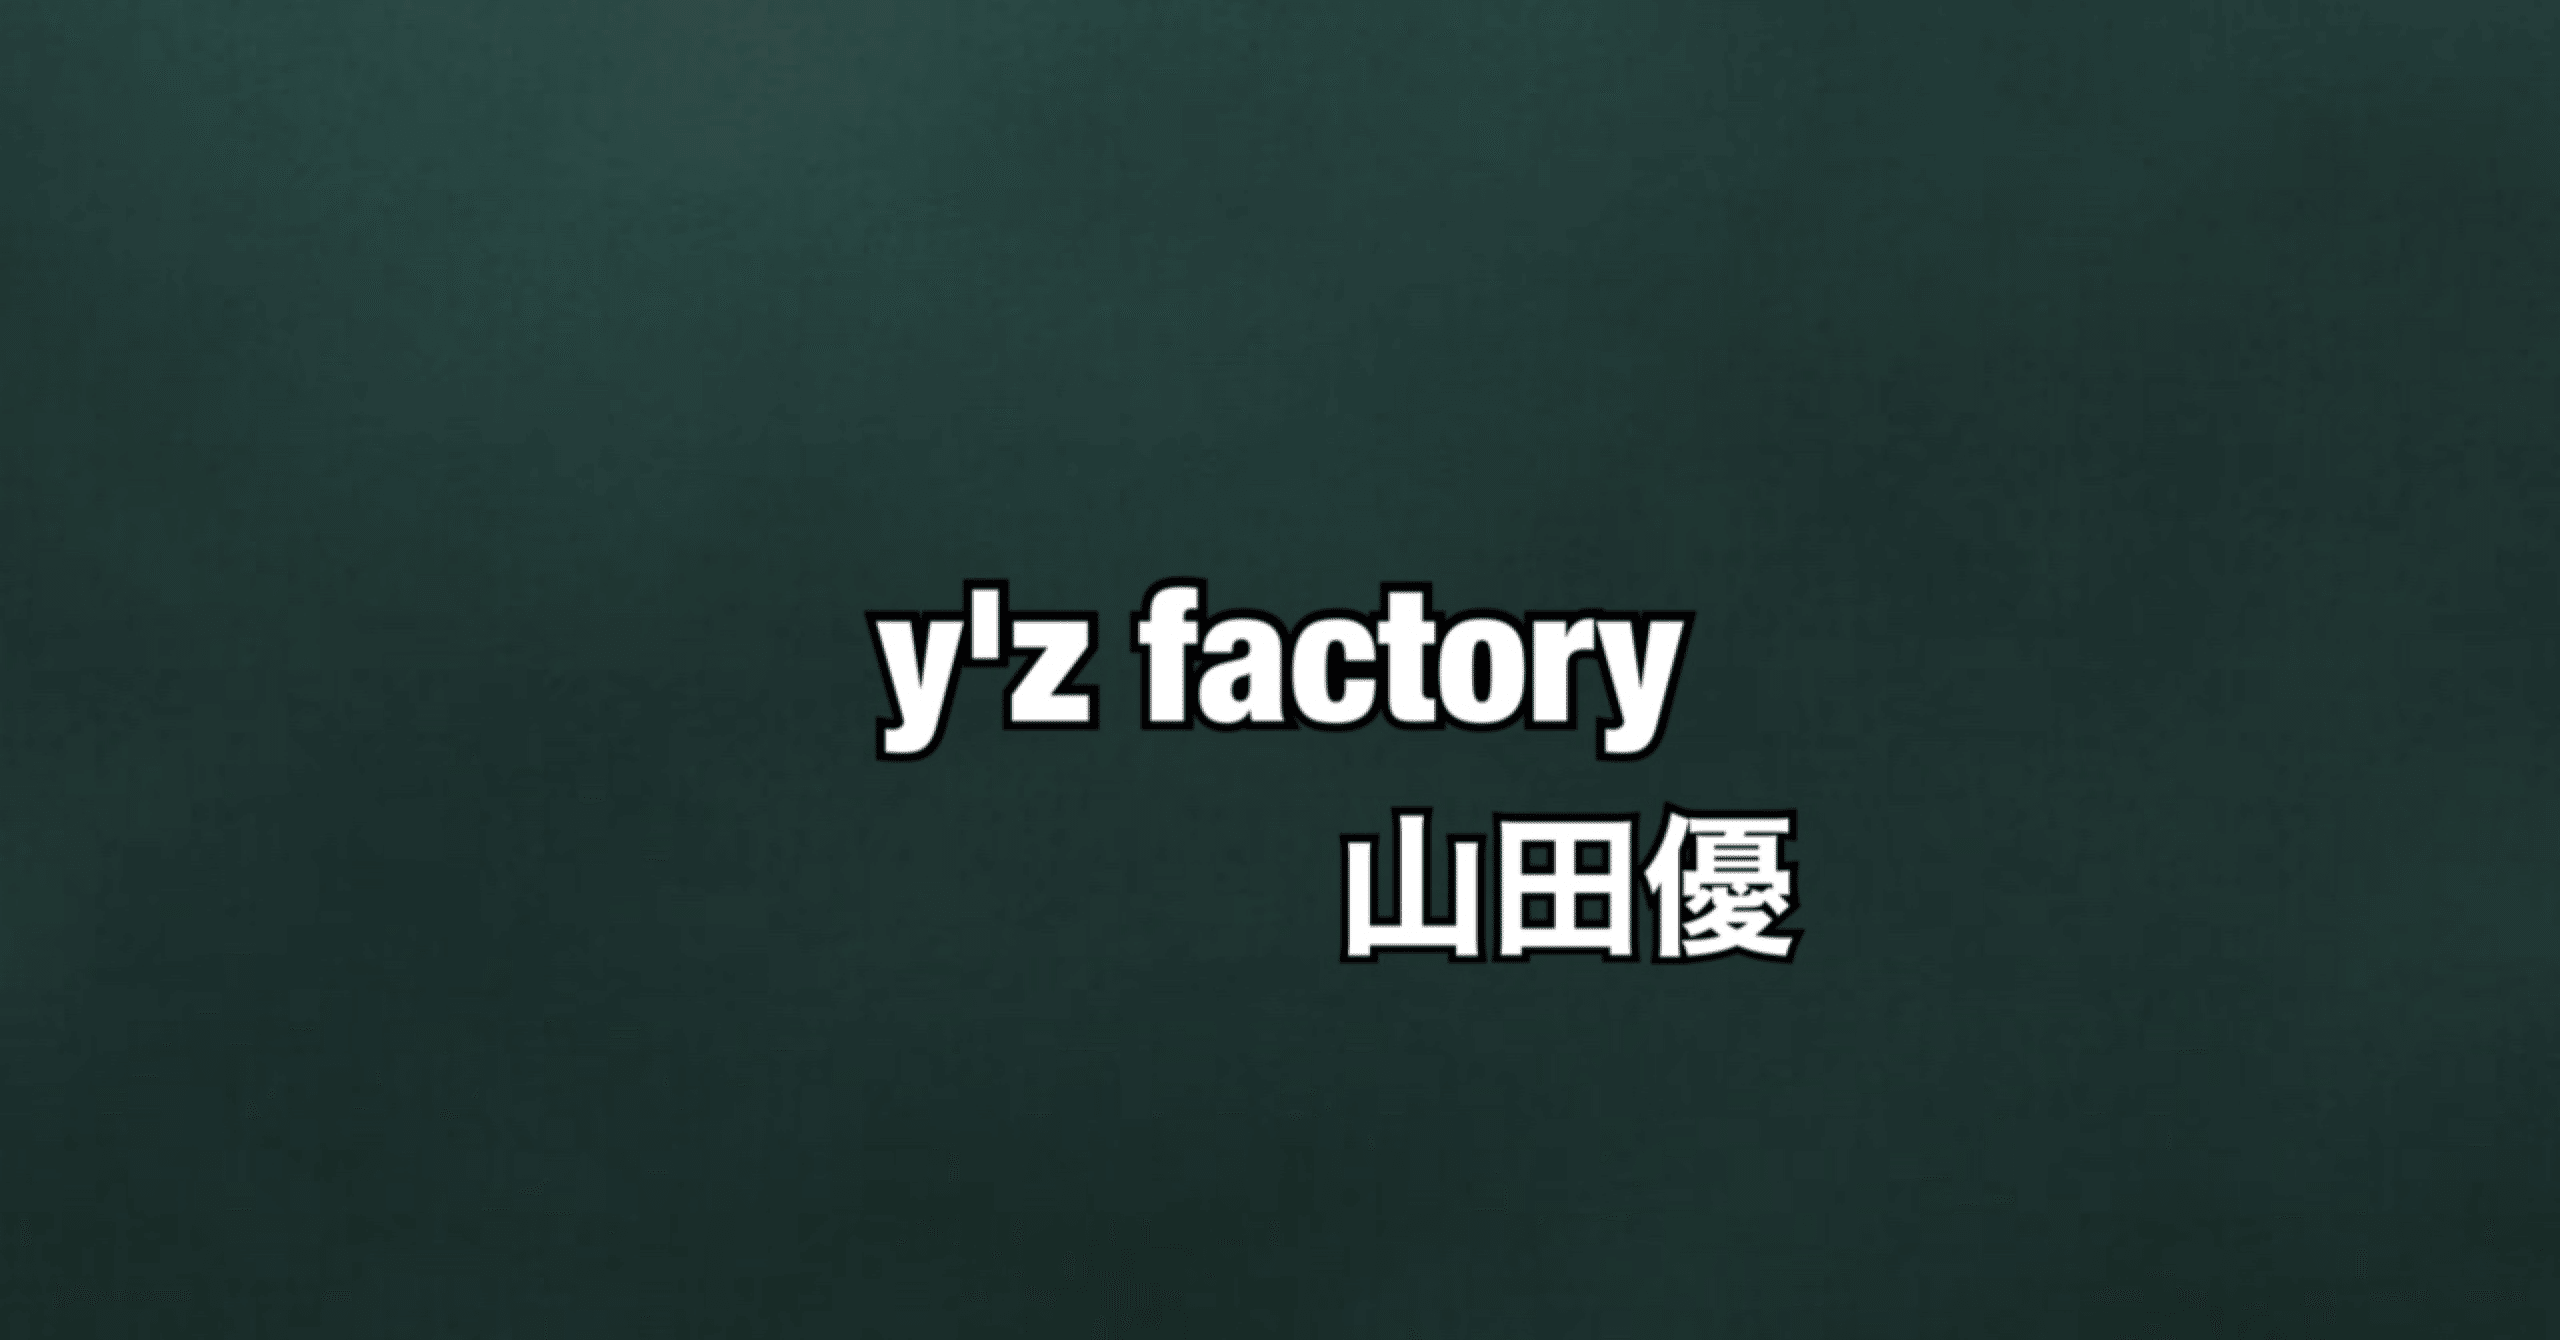 16 山田優が在籍していた Y Z Factory ほりすた Note